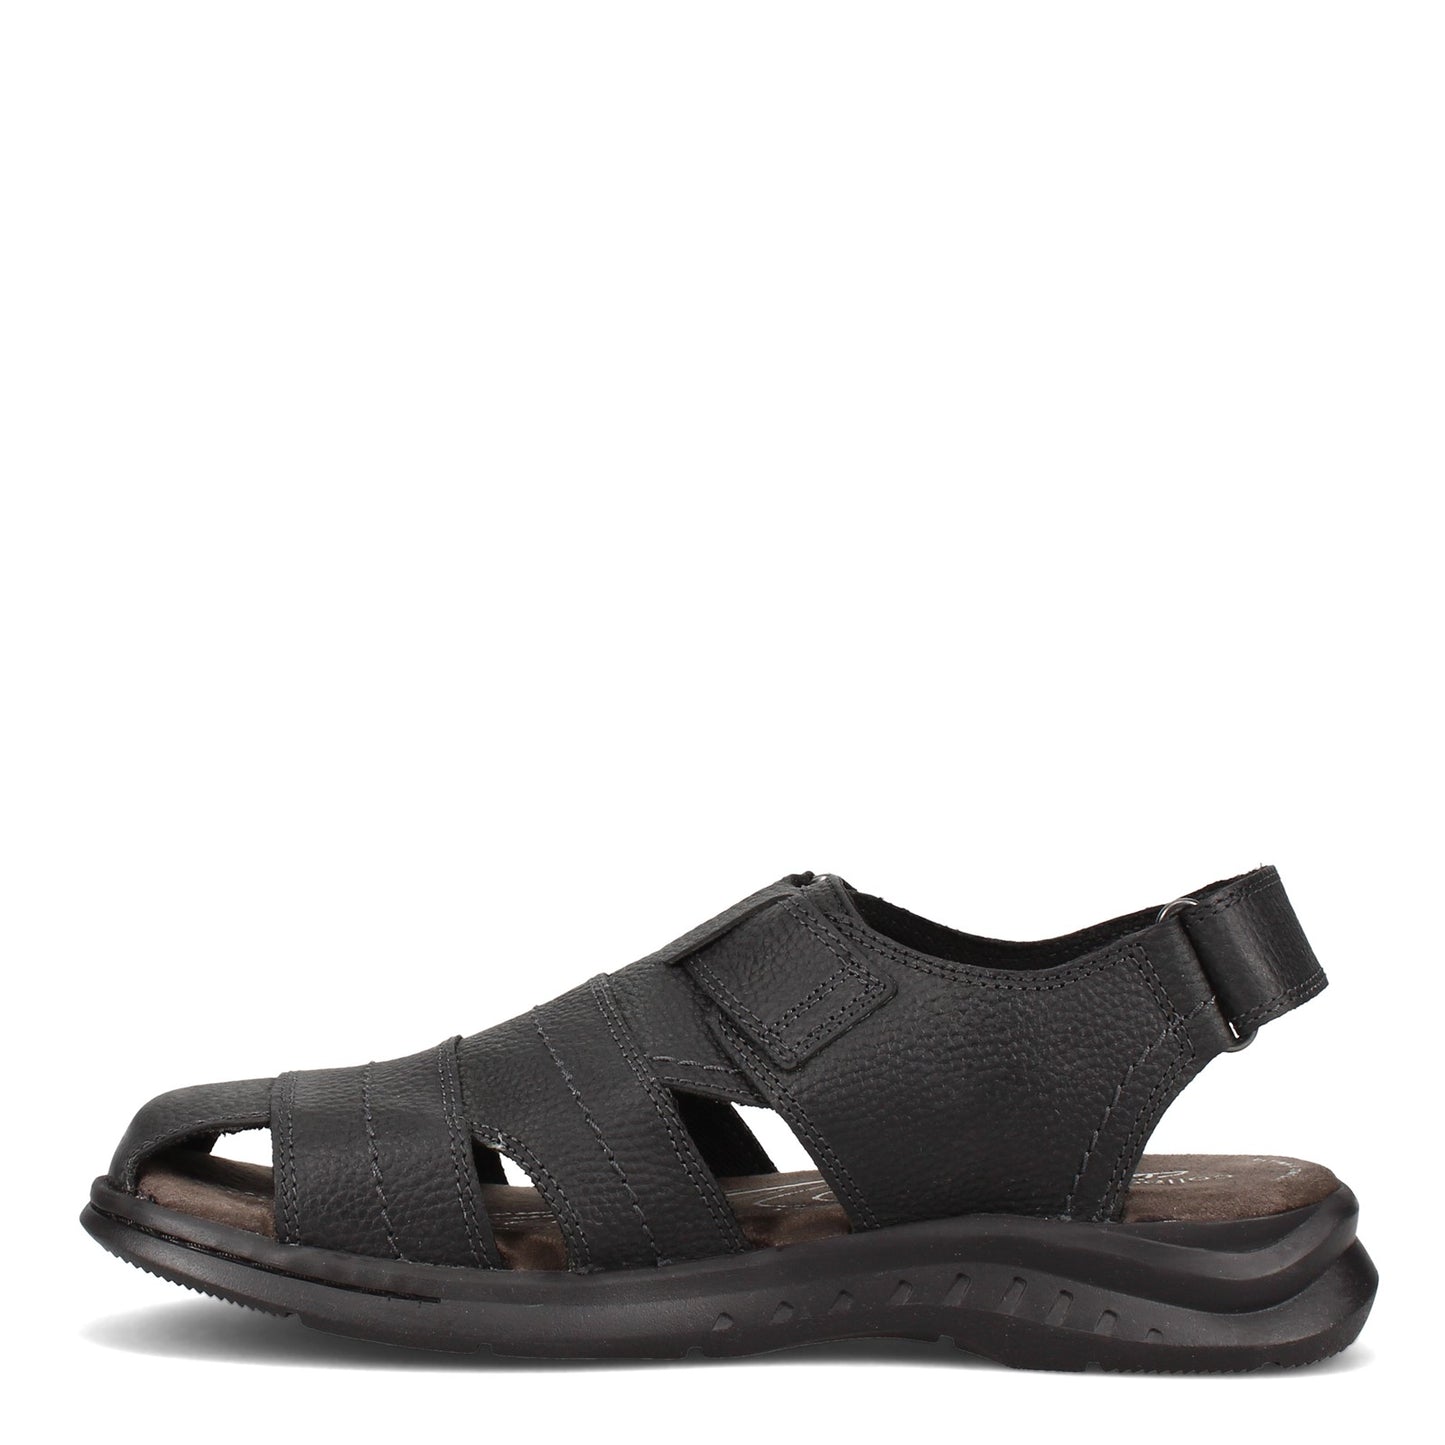 Peltz Shoes  Men's Clarks Hapsford Cove Sandal BLACK 26158014